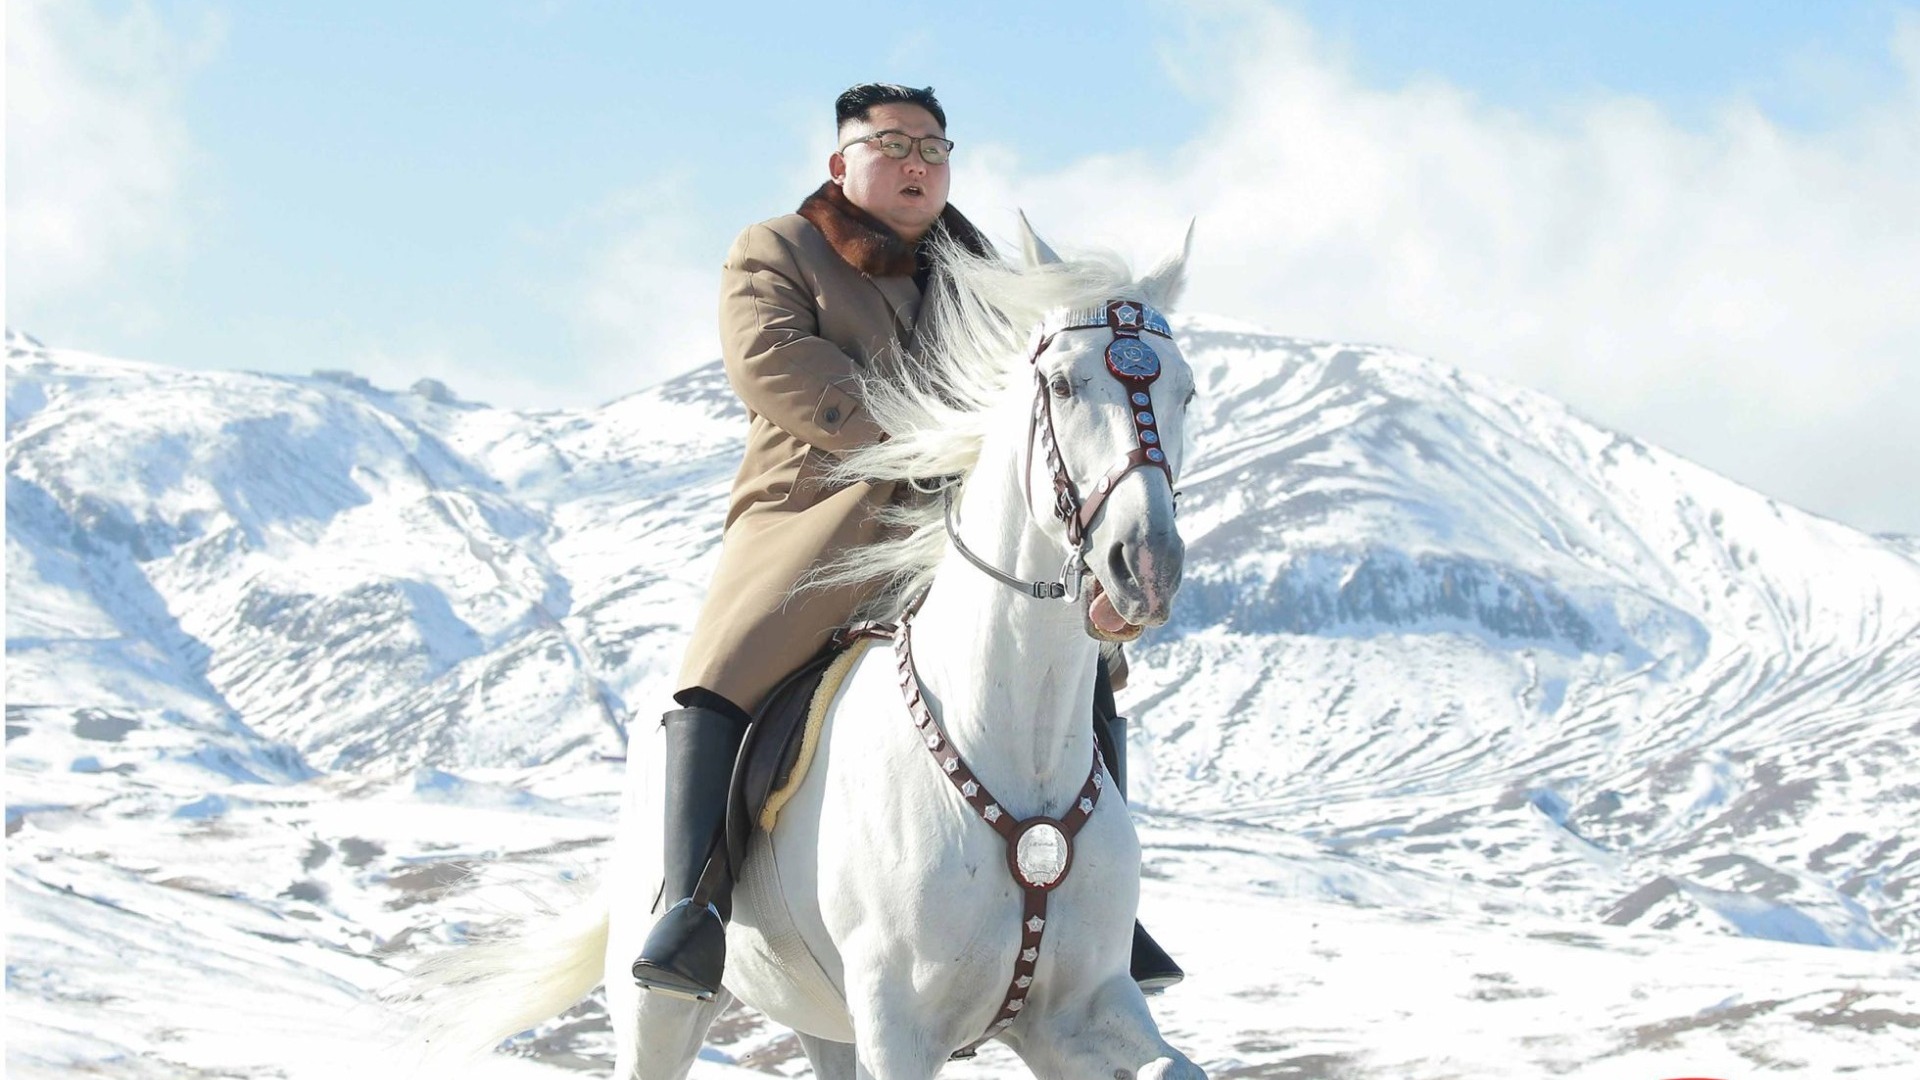 глава КНДР Ким Чен Ын на породистом коне поднялся на священную гору Пэктусан